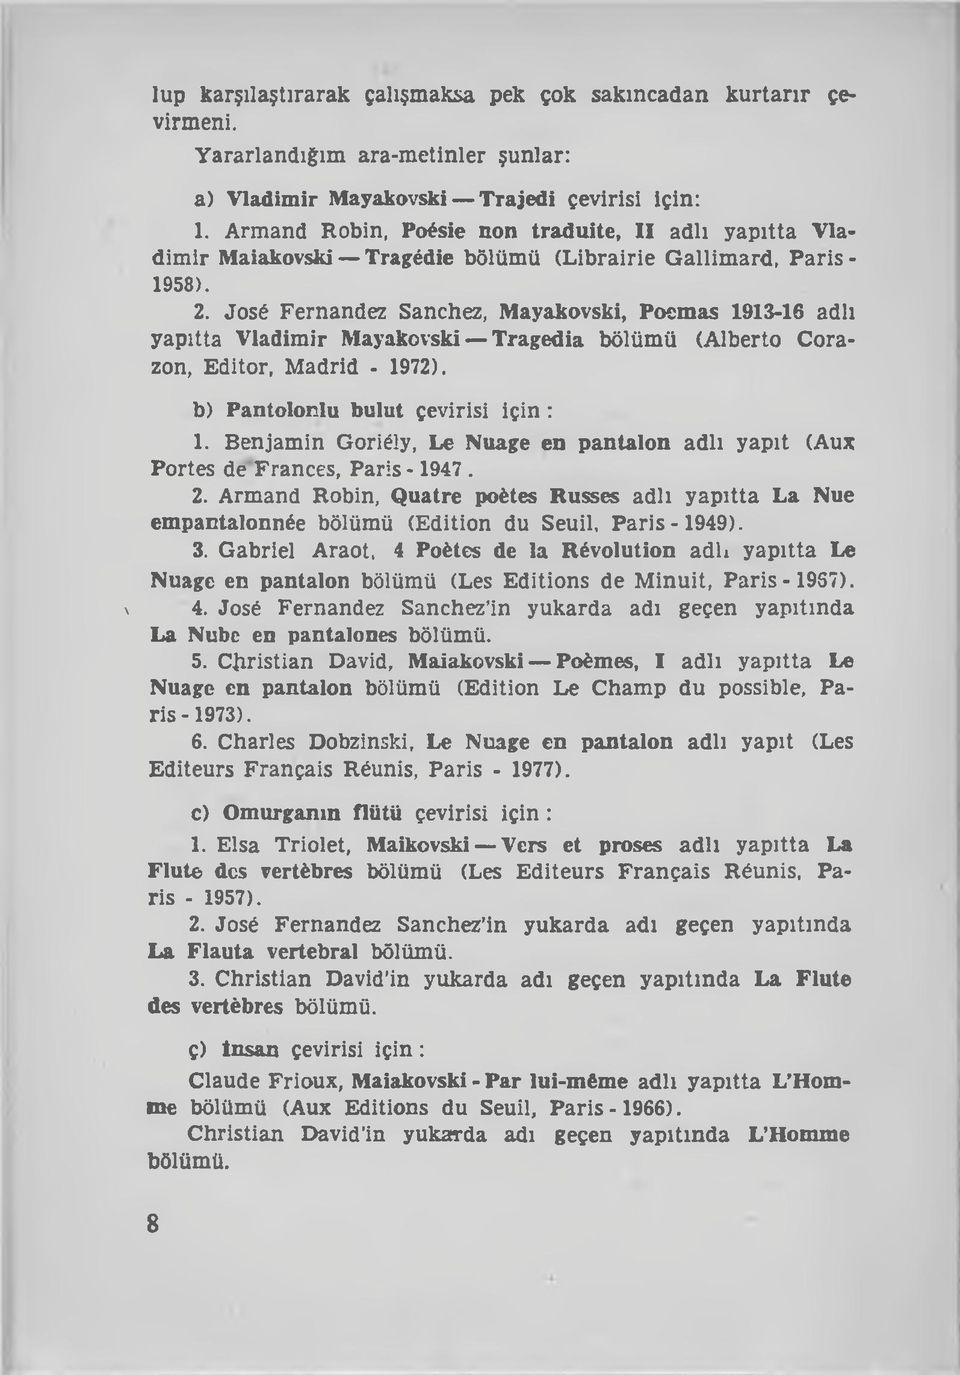 José Fernandez Sanchez, Mayakovski, Poemas 1913-16 adlı yapıtta Vladimir Mayakovski Tragedia bölümü (Alberto Corazon, Editor, Madrid - 1972). b) Pantolonlu bulut çevirisi için : 1.